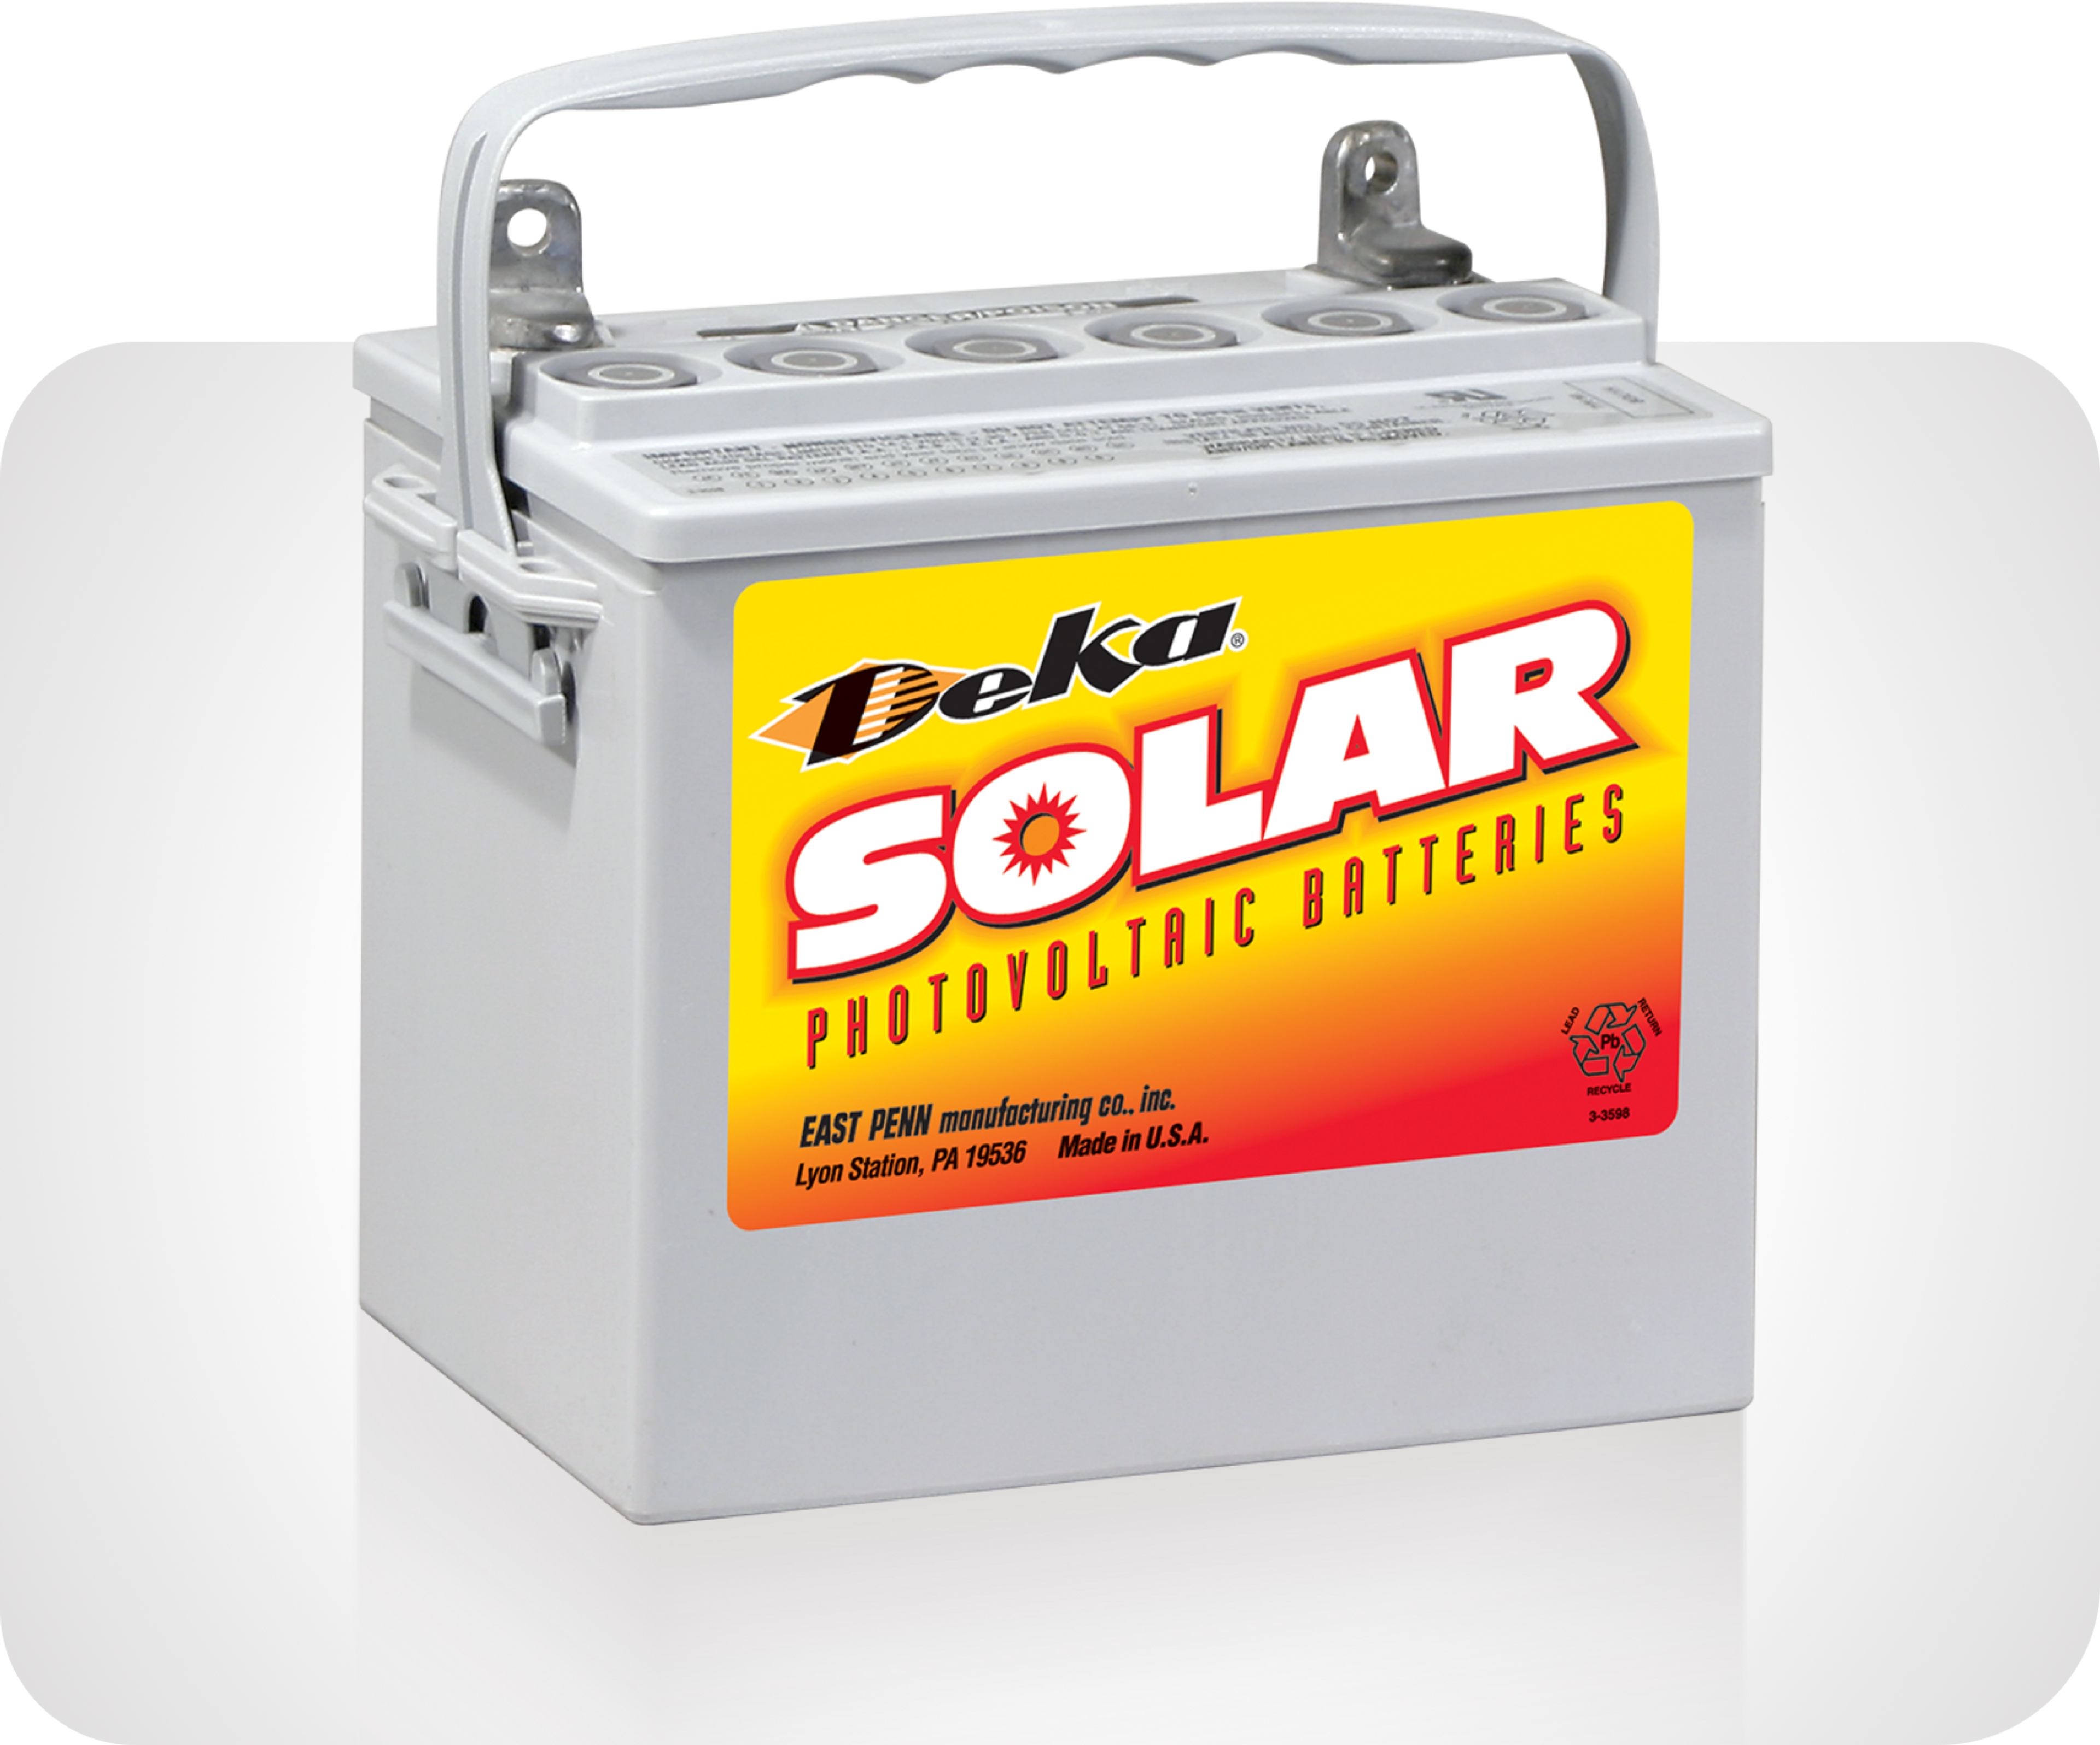 Picture of Deka Solar Batteries